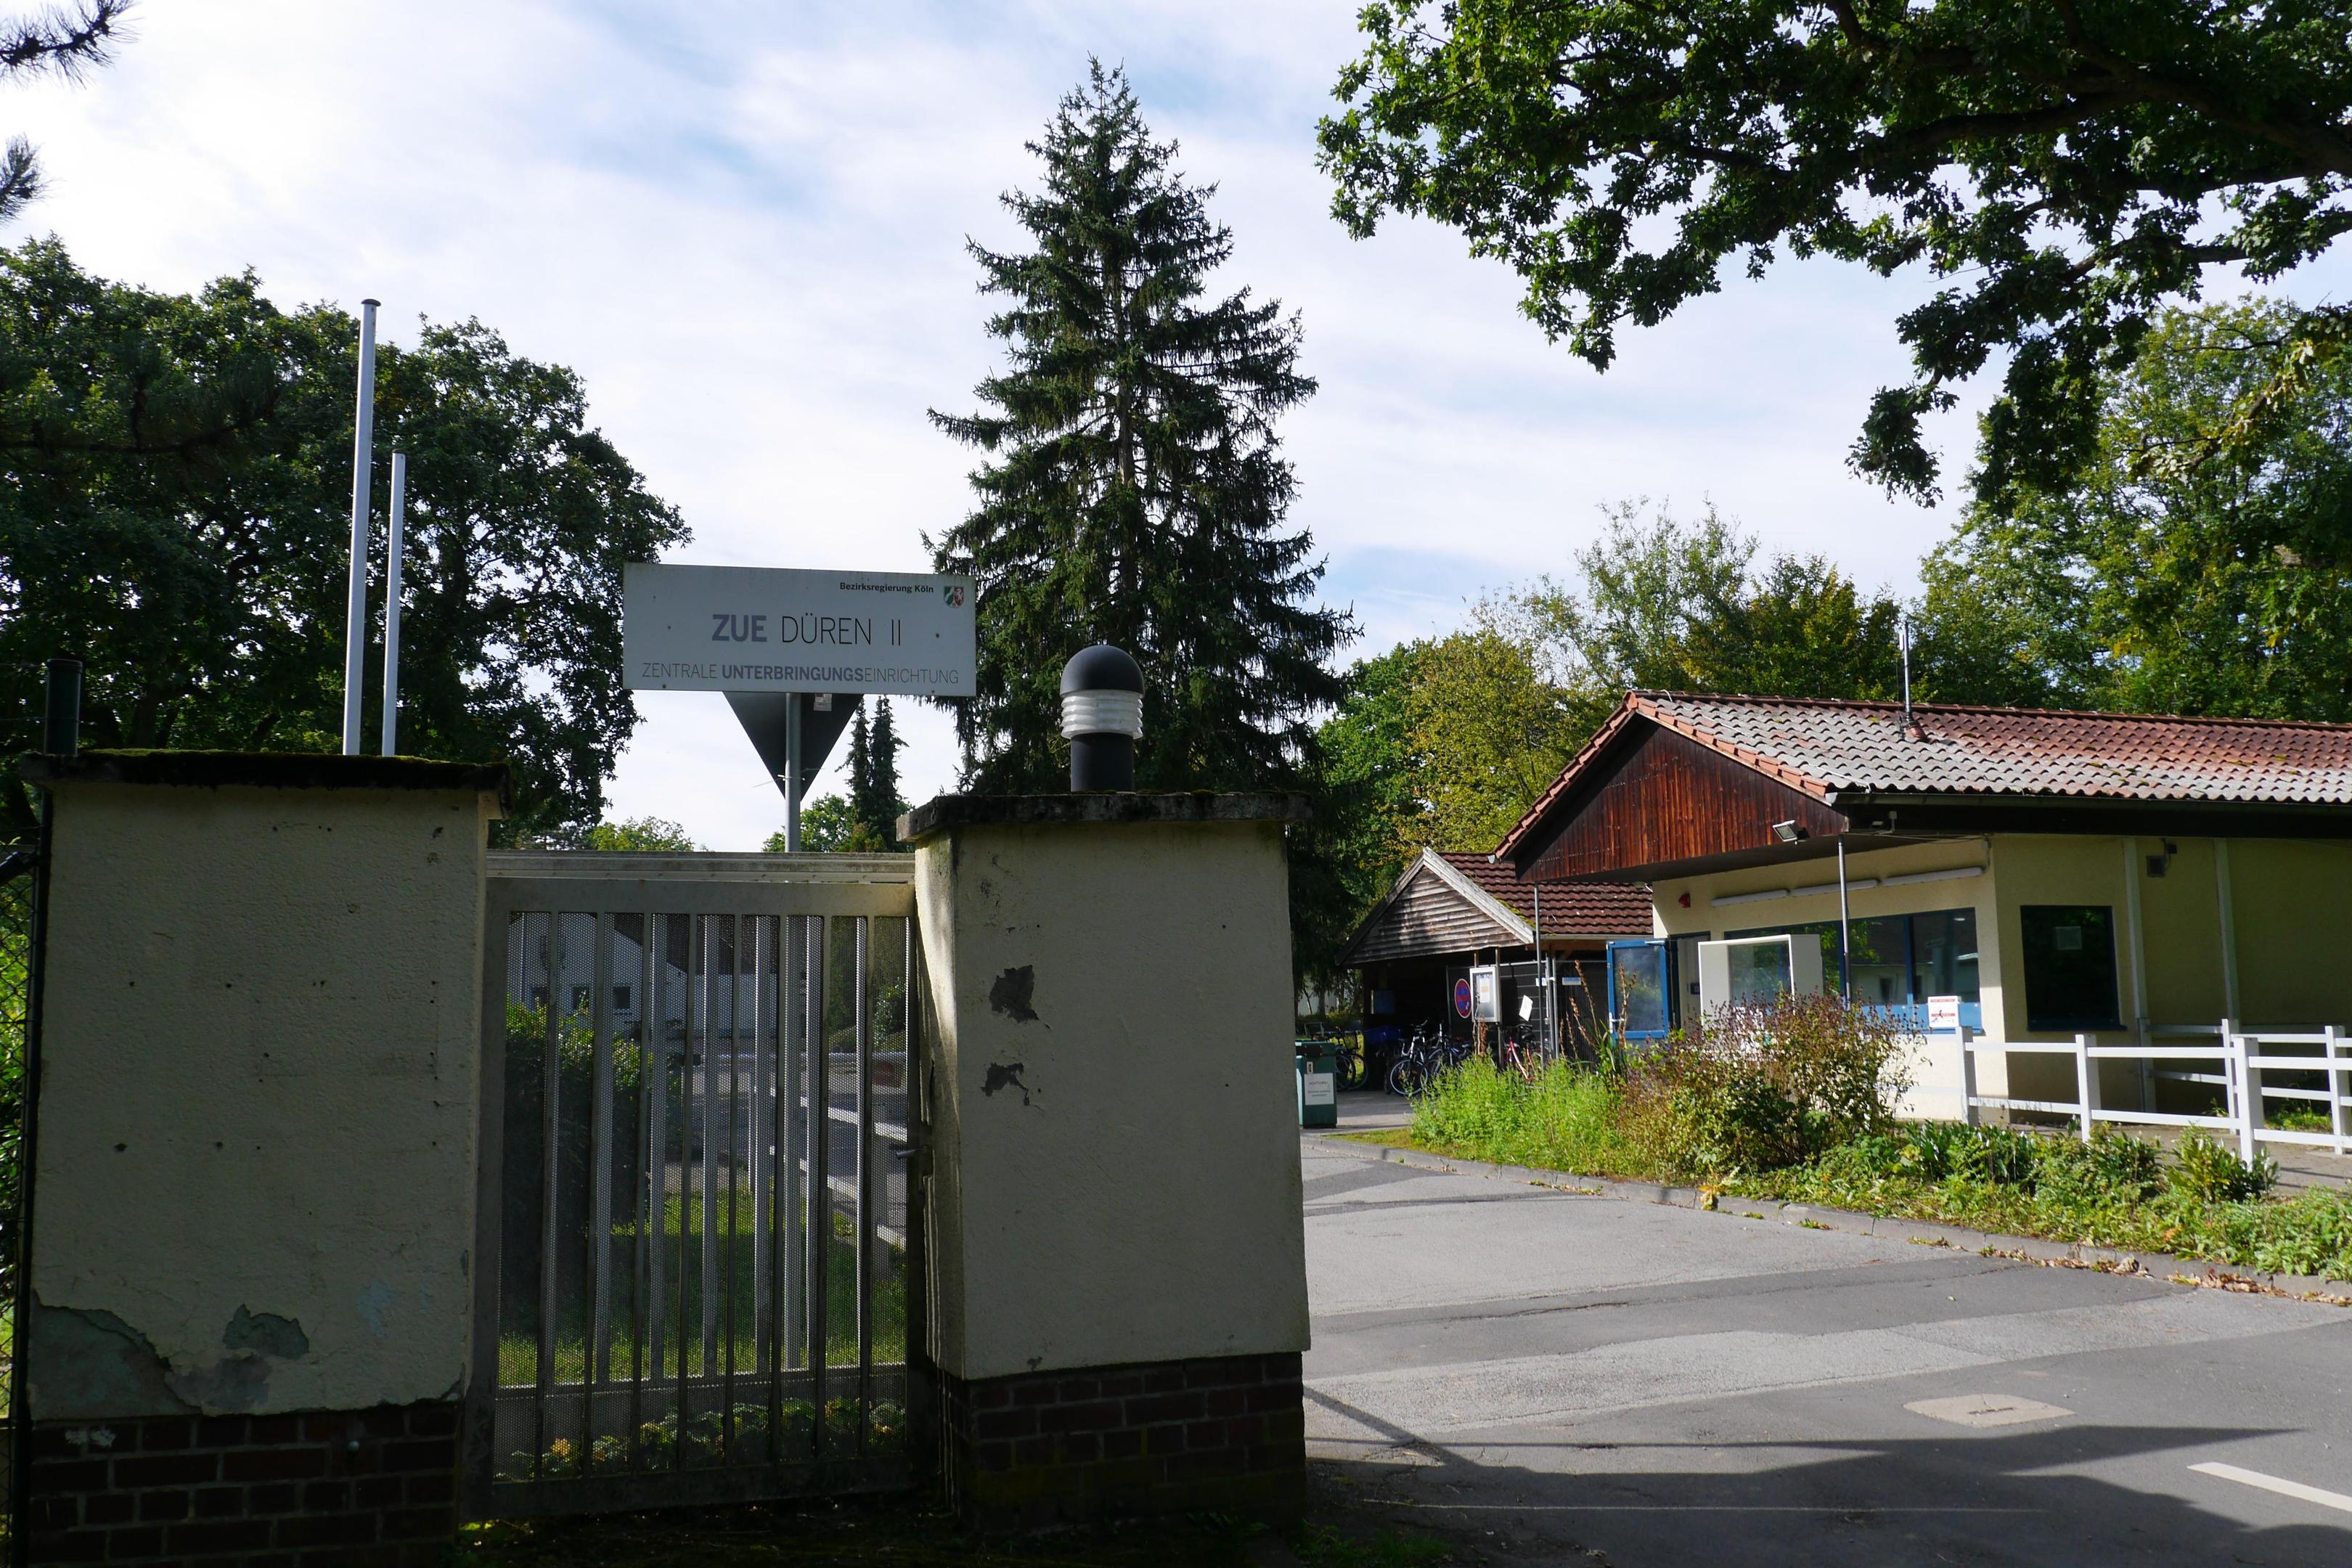 Seit 2015 ist das ehemalige Munitionsdepot Gürzenicher Wald der Bundeswehr Zentrale Unterbringungseinrichtung für Flüchtlinge. 